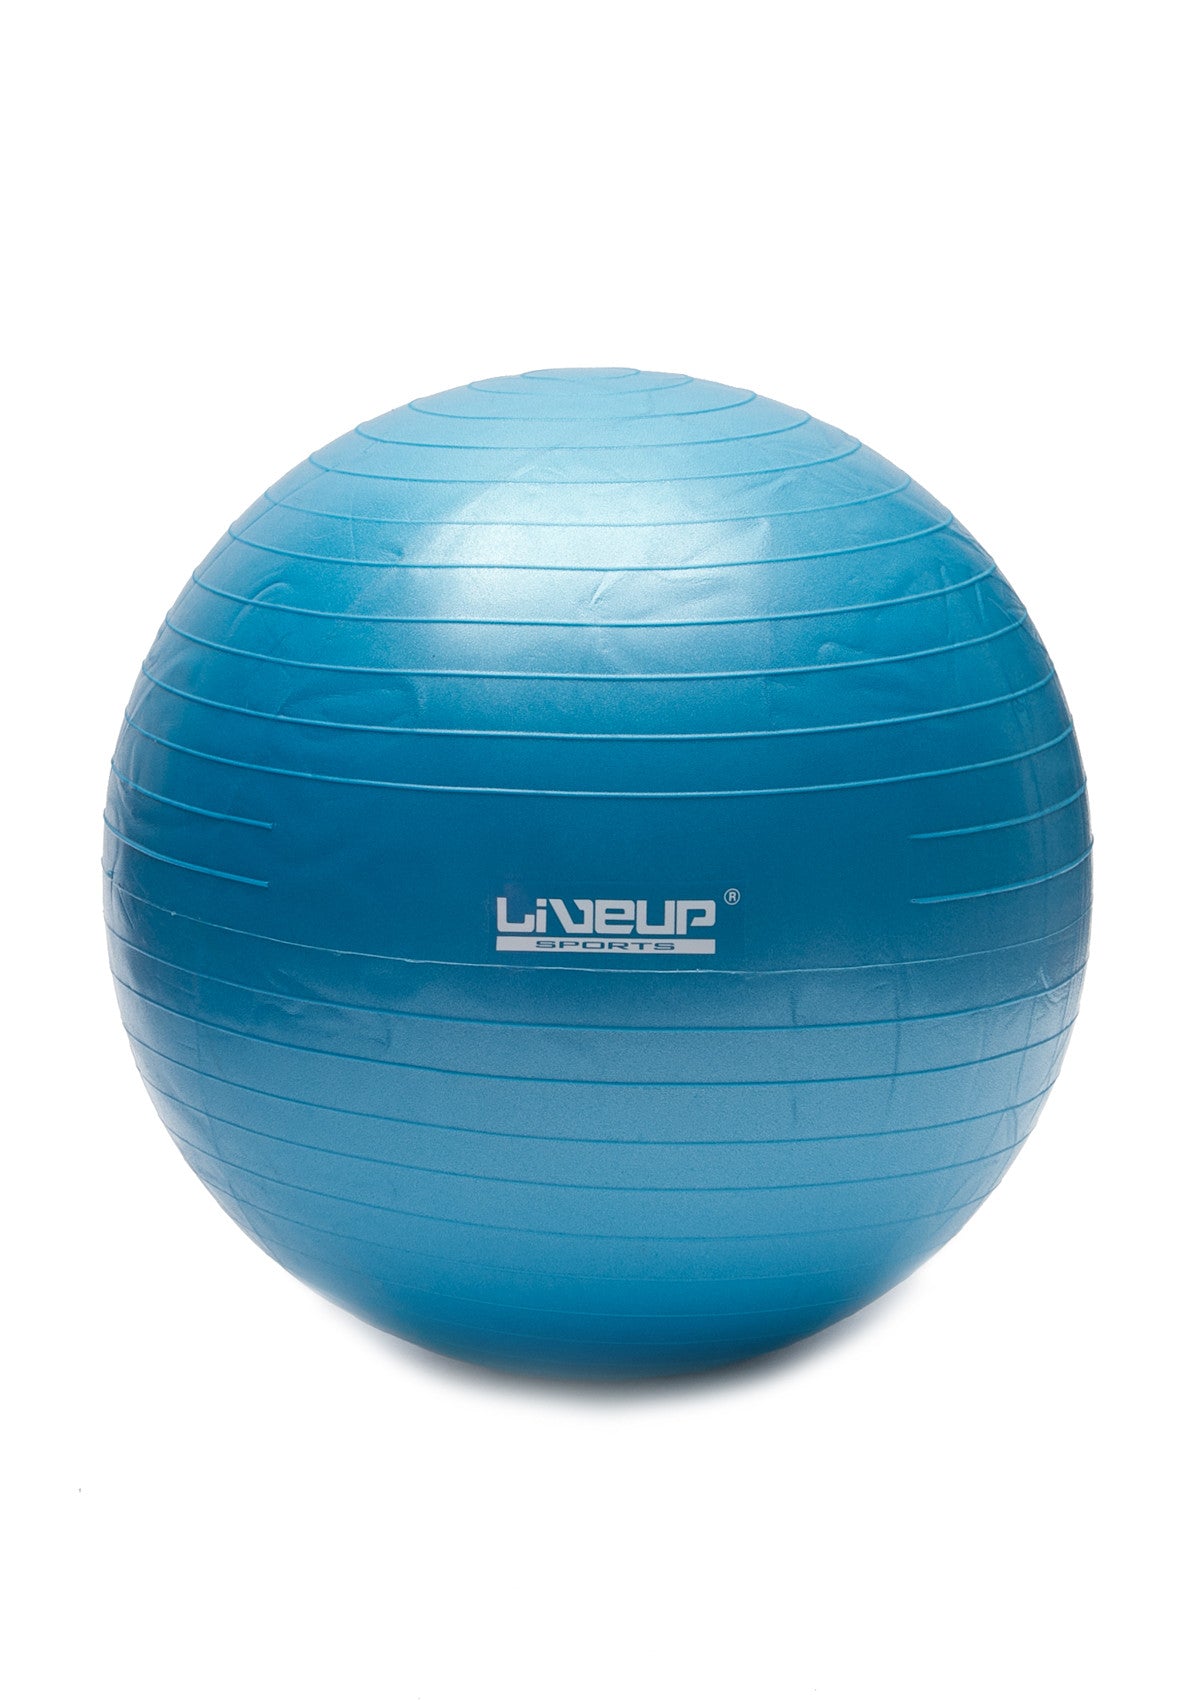 High Grade Exercise Ball - Burst Resistant - Blue